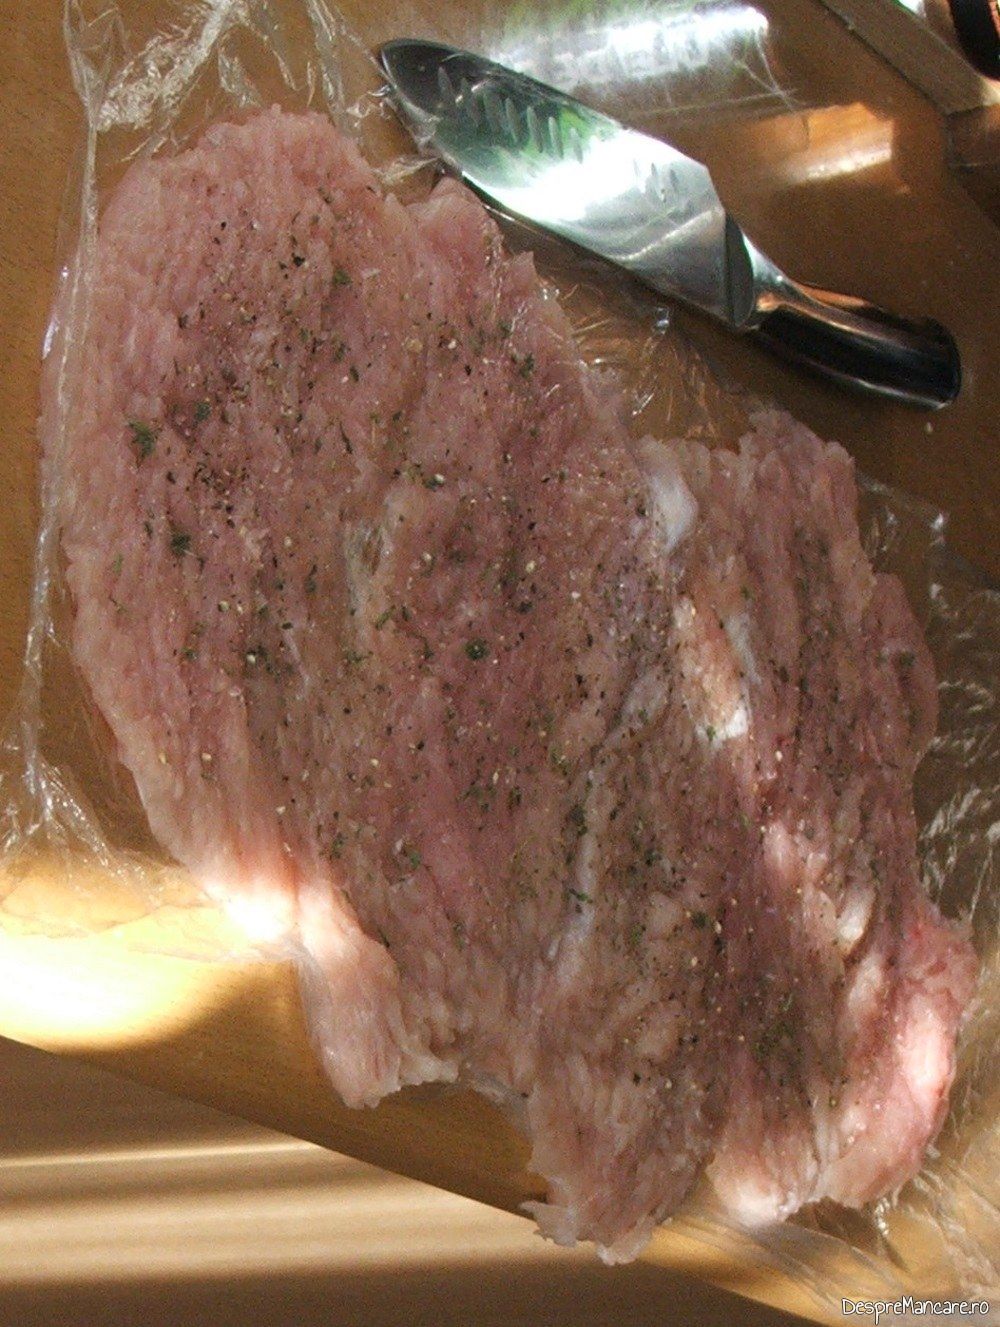 Asezonare bucata din piept de curcan, intinsa cu ciocanul de carne.